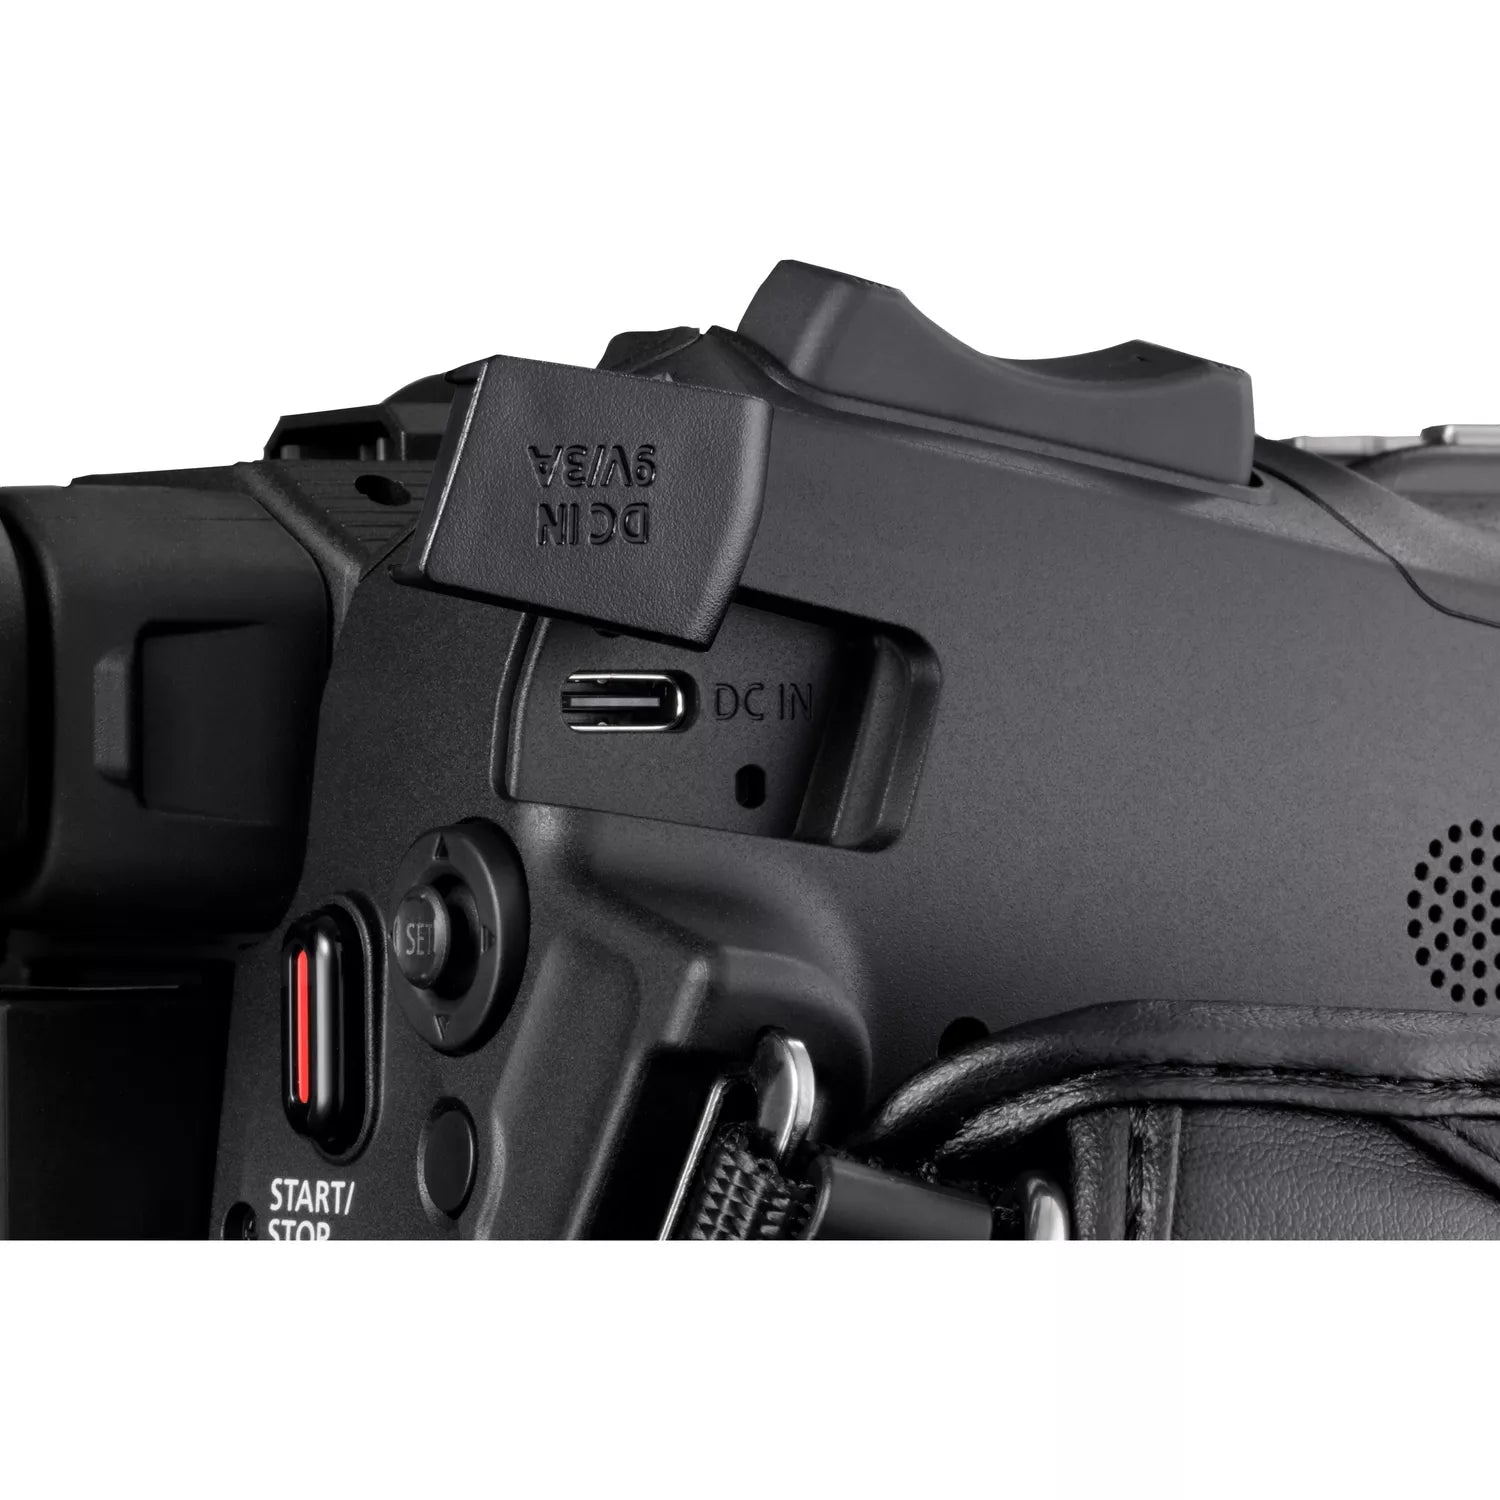 Canon XA-60 Professional 4K Compact Camcorder